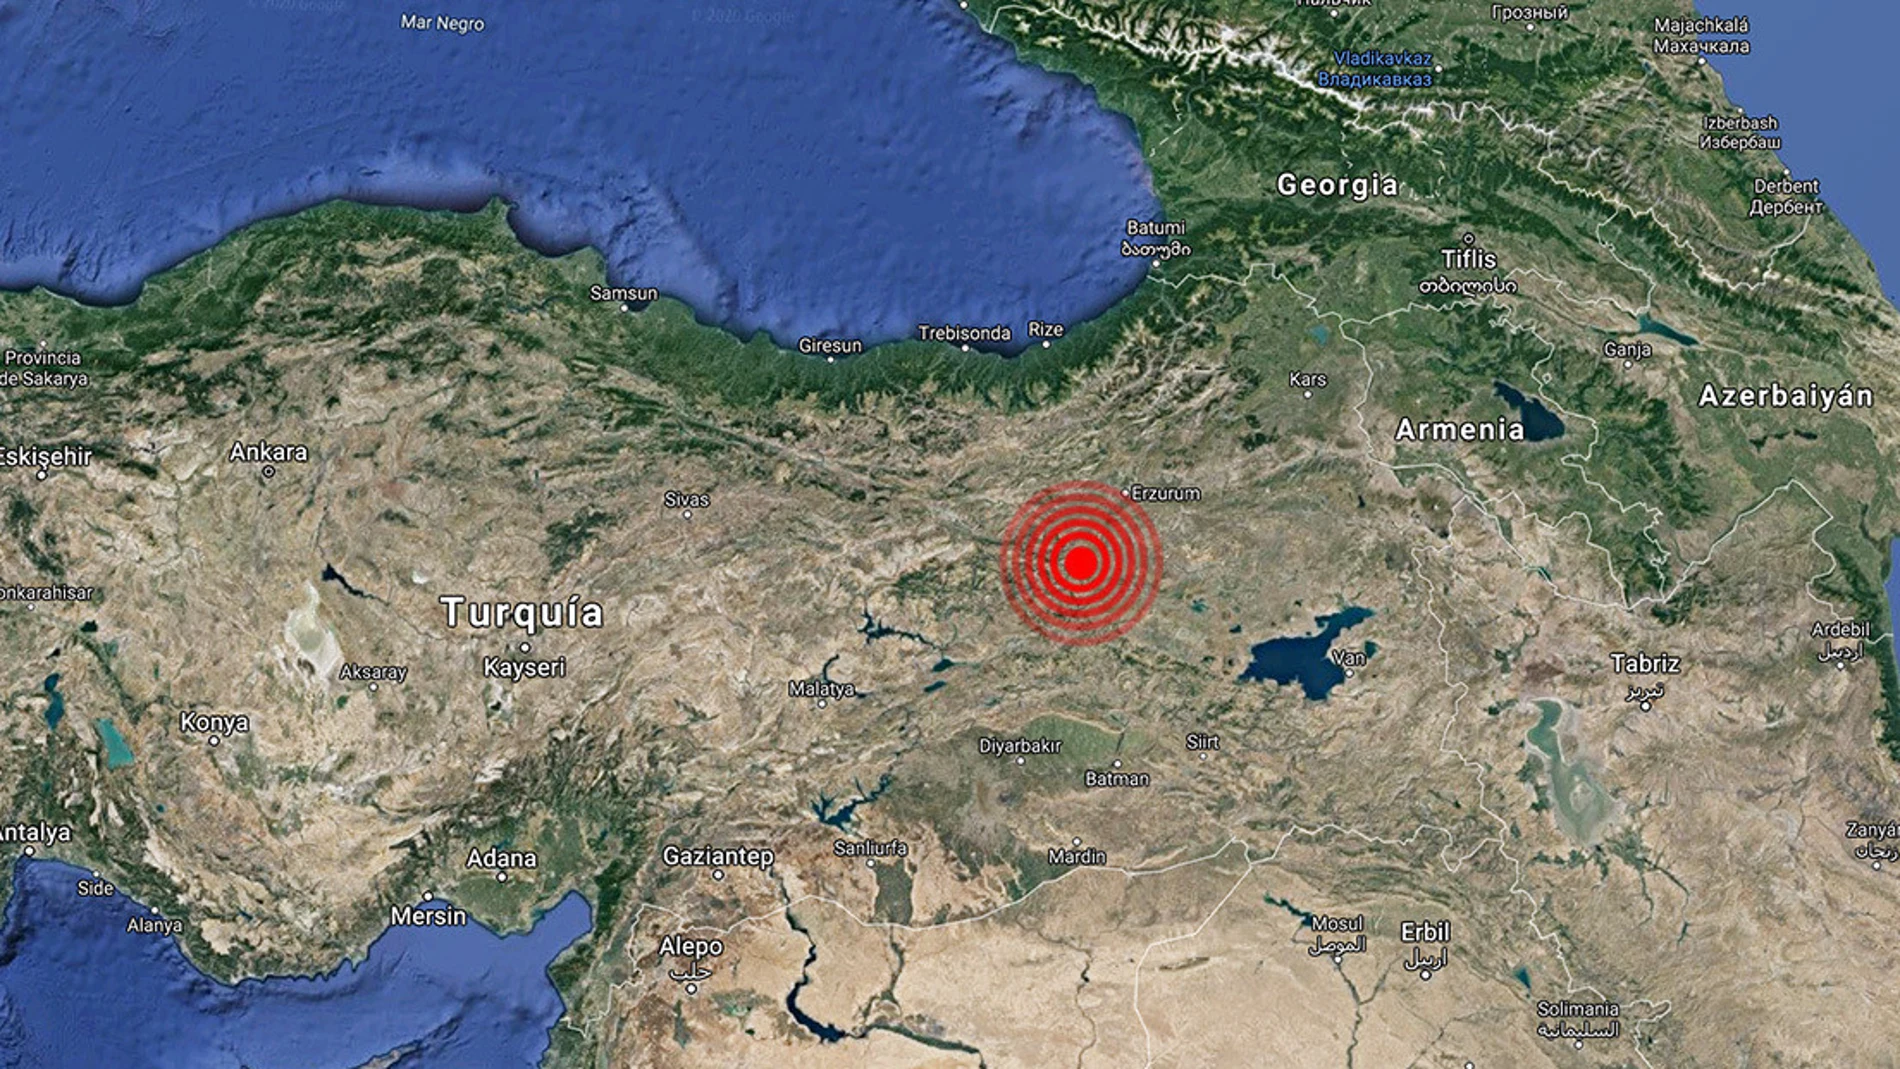 Mapa de Turquía con el epicentro del terremoto